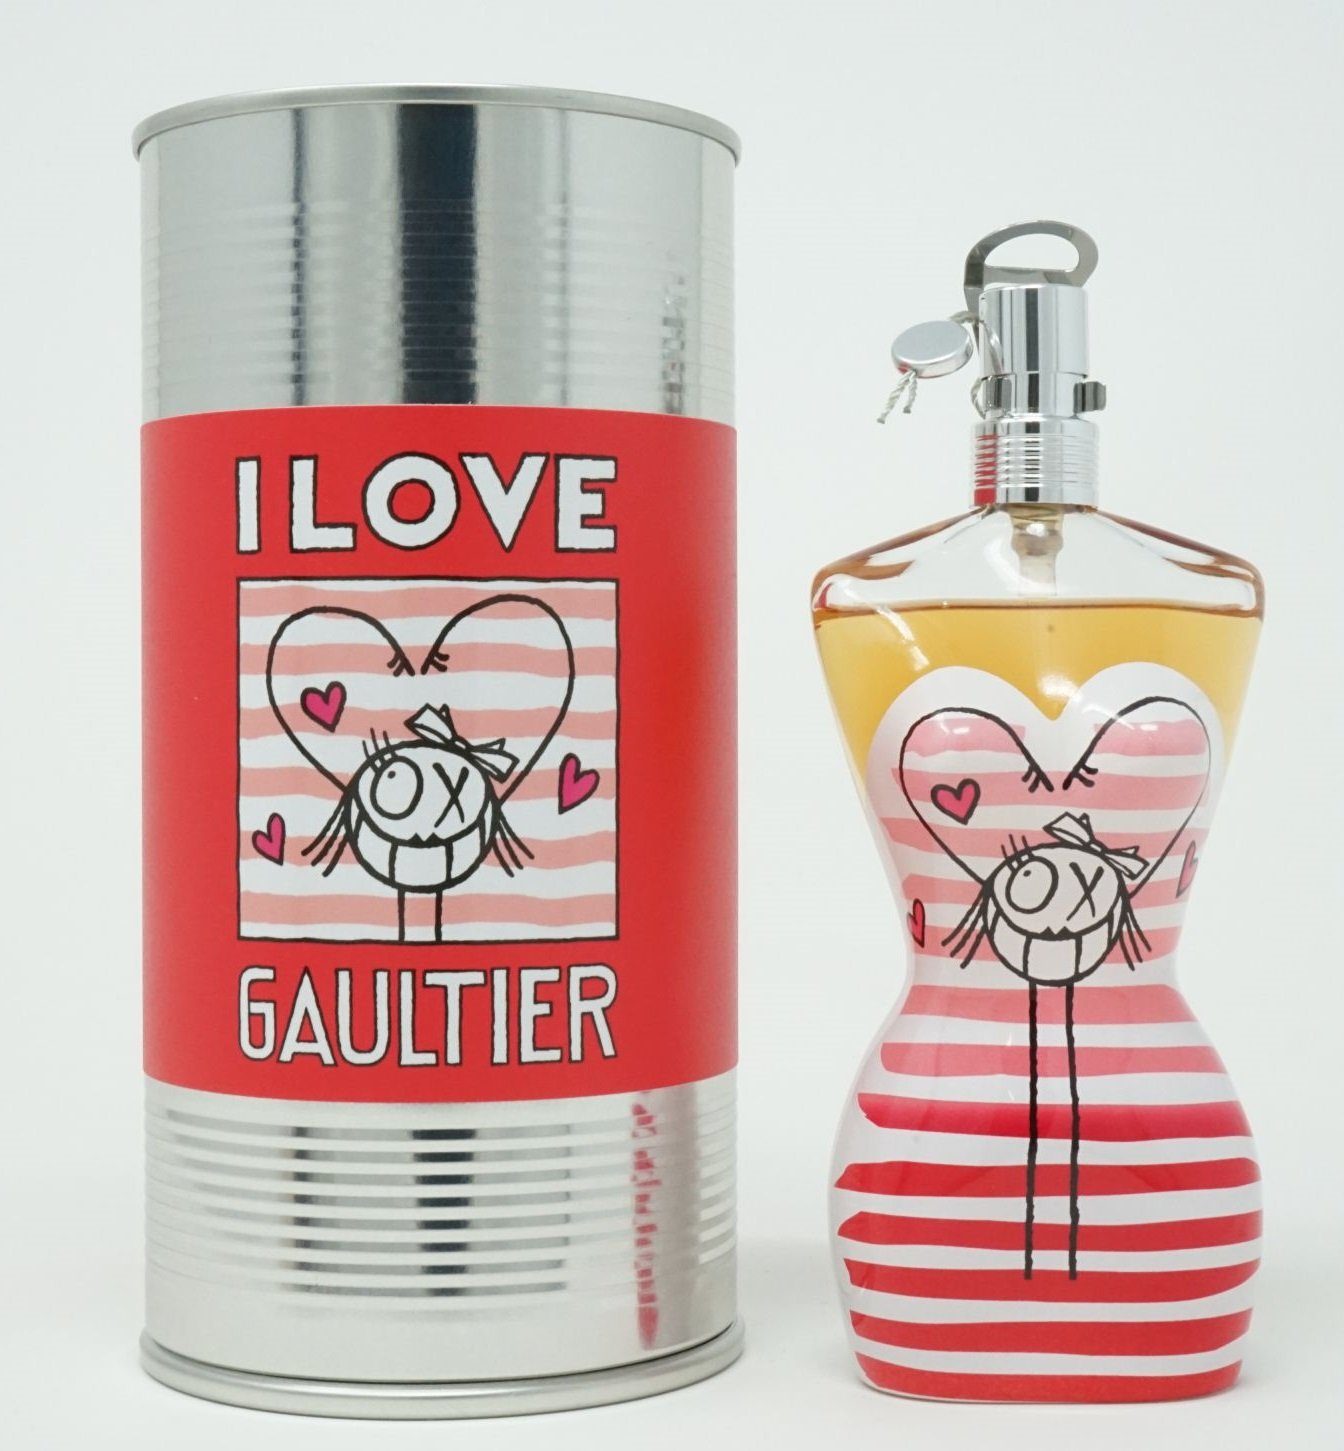 Gaultier Gaultier I Jean GAULTIER PAUL JEAN Toilette De Toilette Eau Fraiche de Paul 100ml Eau Eau Love